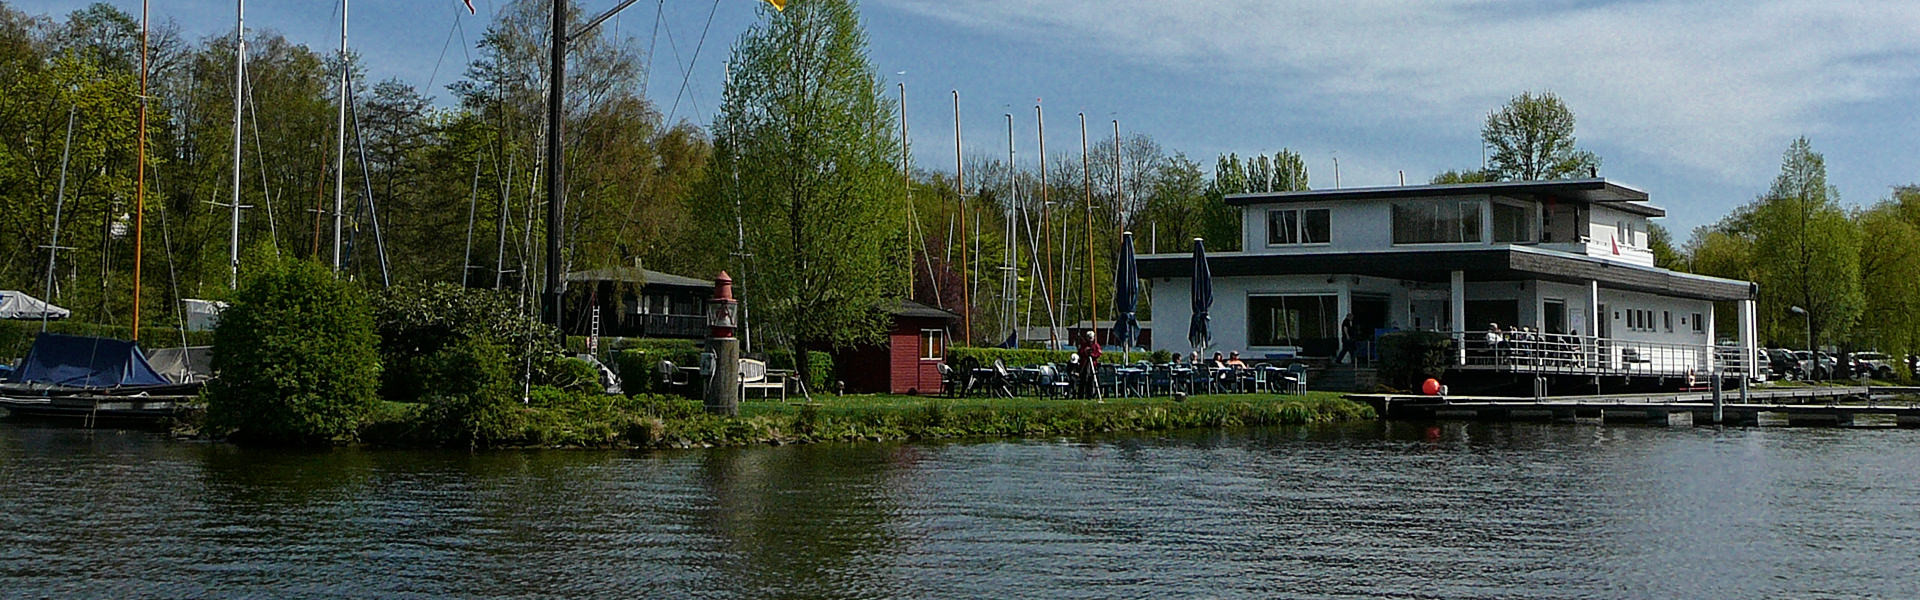 Yachtclub Ruhrland Essen e.V.